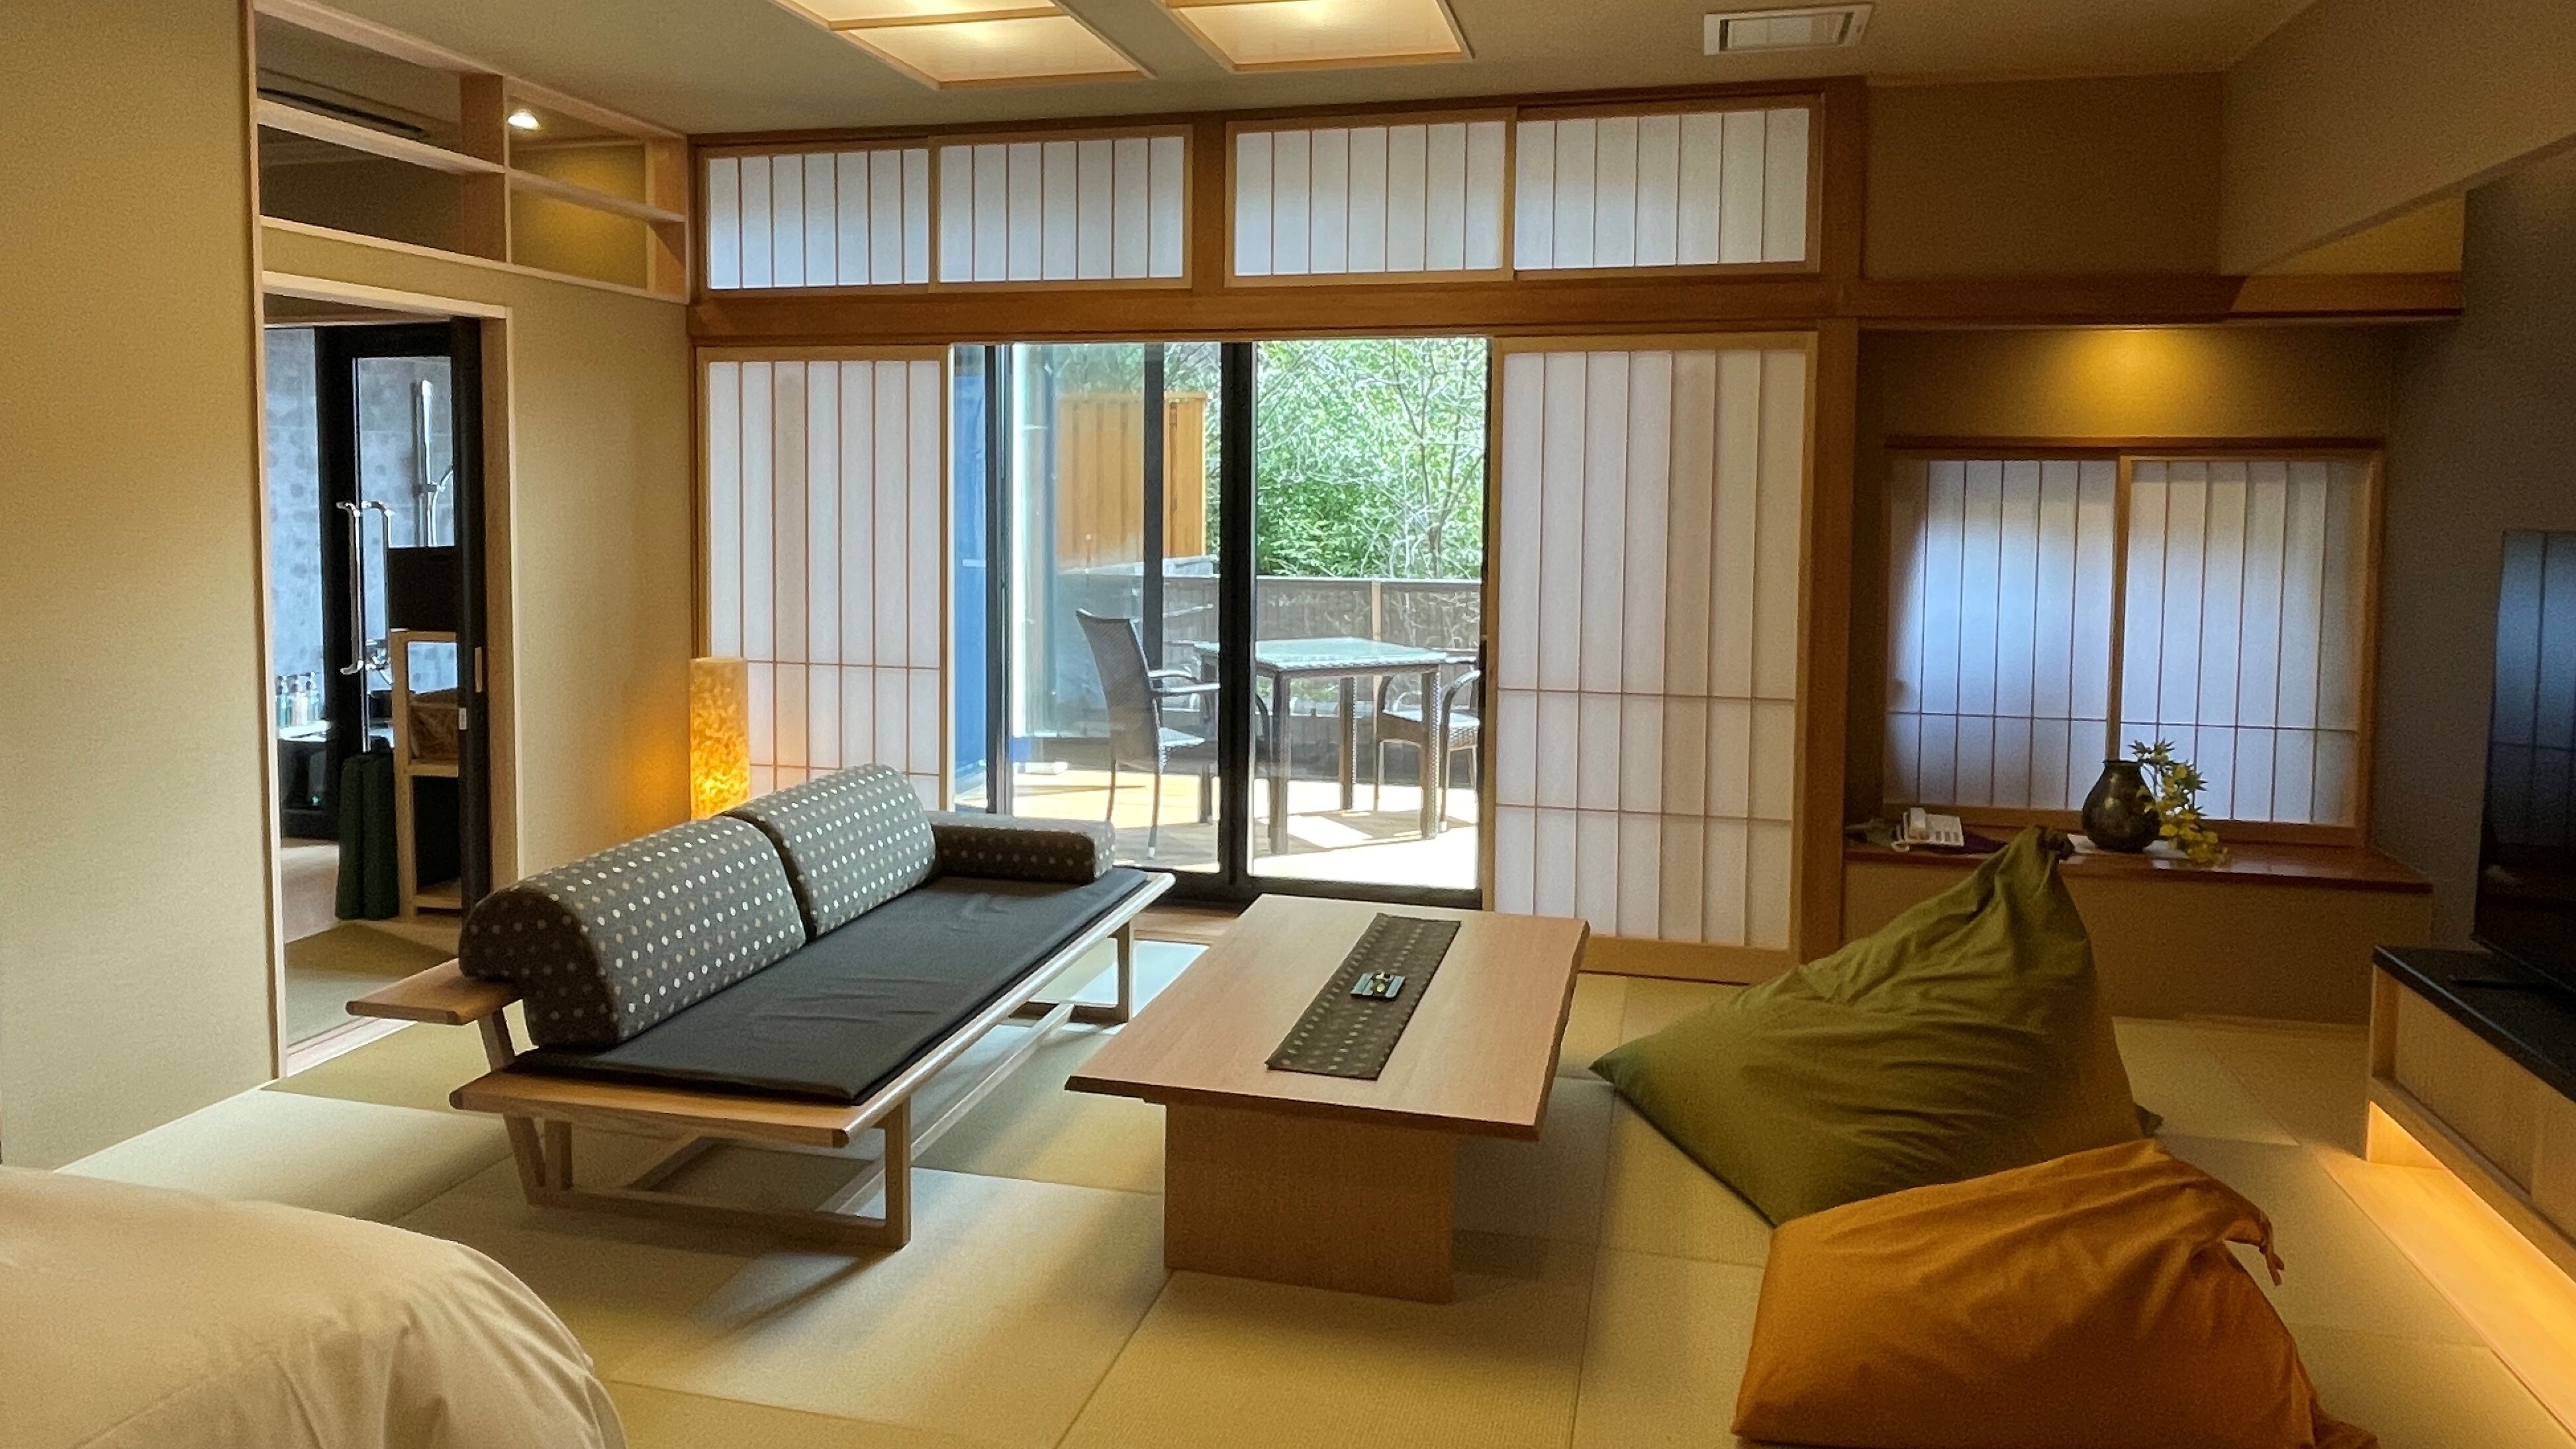 Kamar twin modern Jepang dengan pemandian semi-terbuka